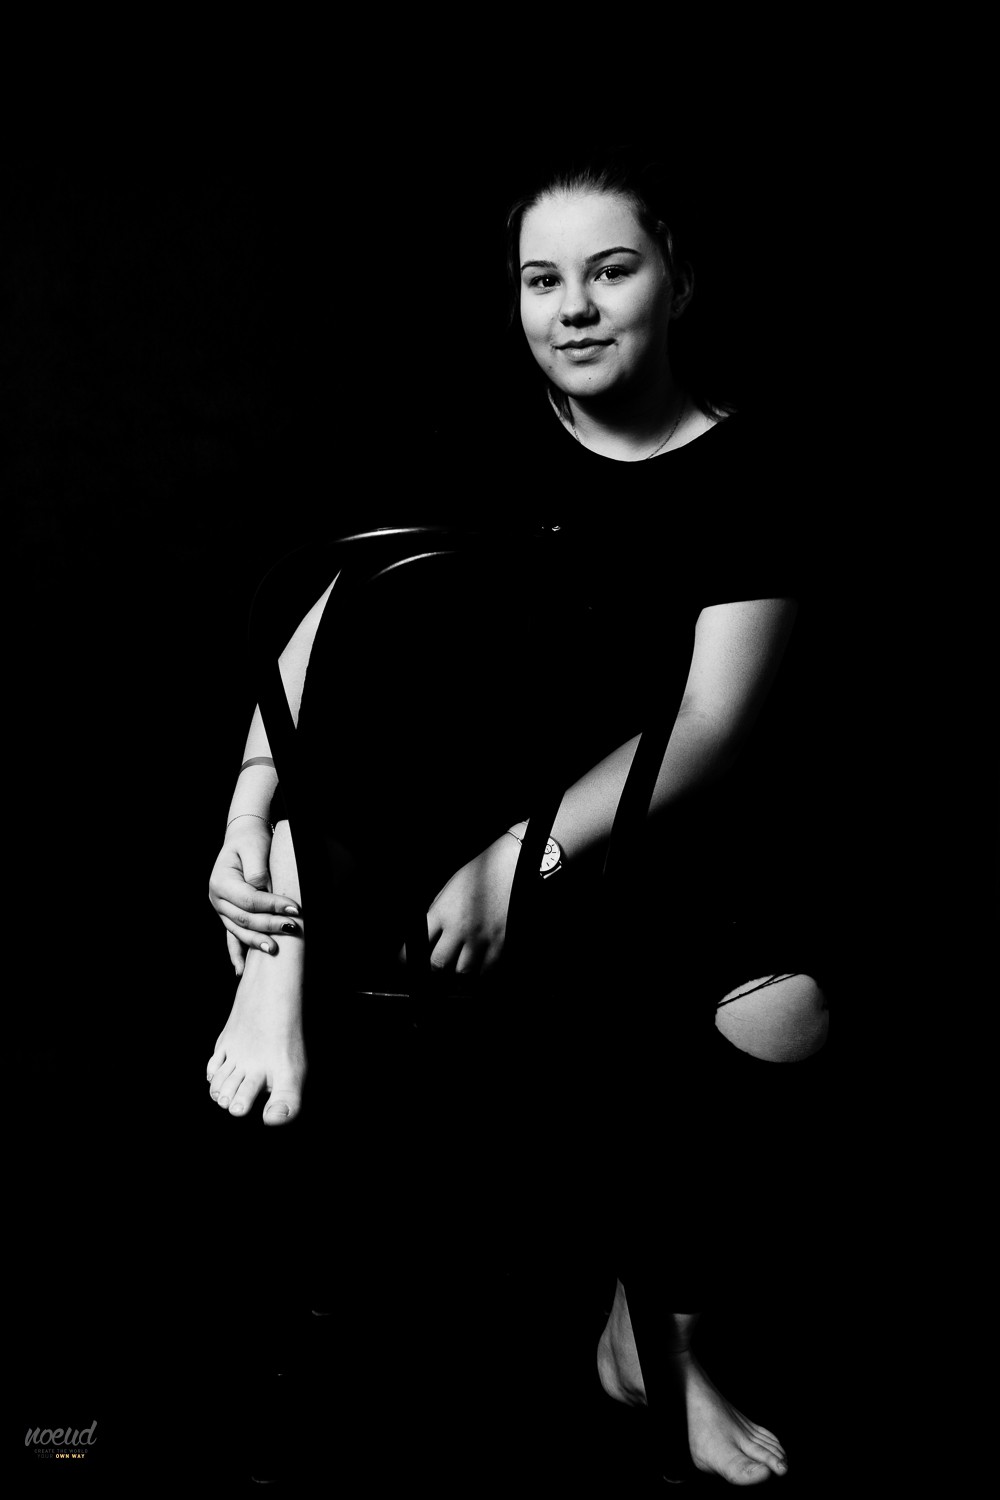 zdjęcia bedzin fotograf noeud-ania-kotula-fotografia portfolio zdjecia black white czarno biale